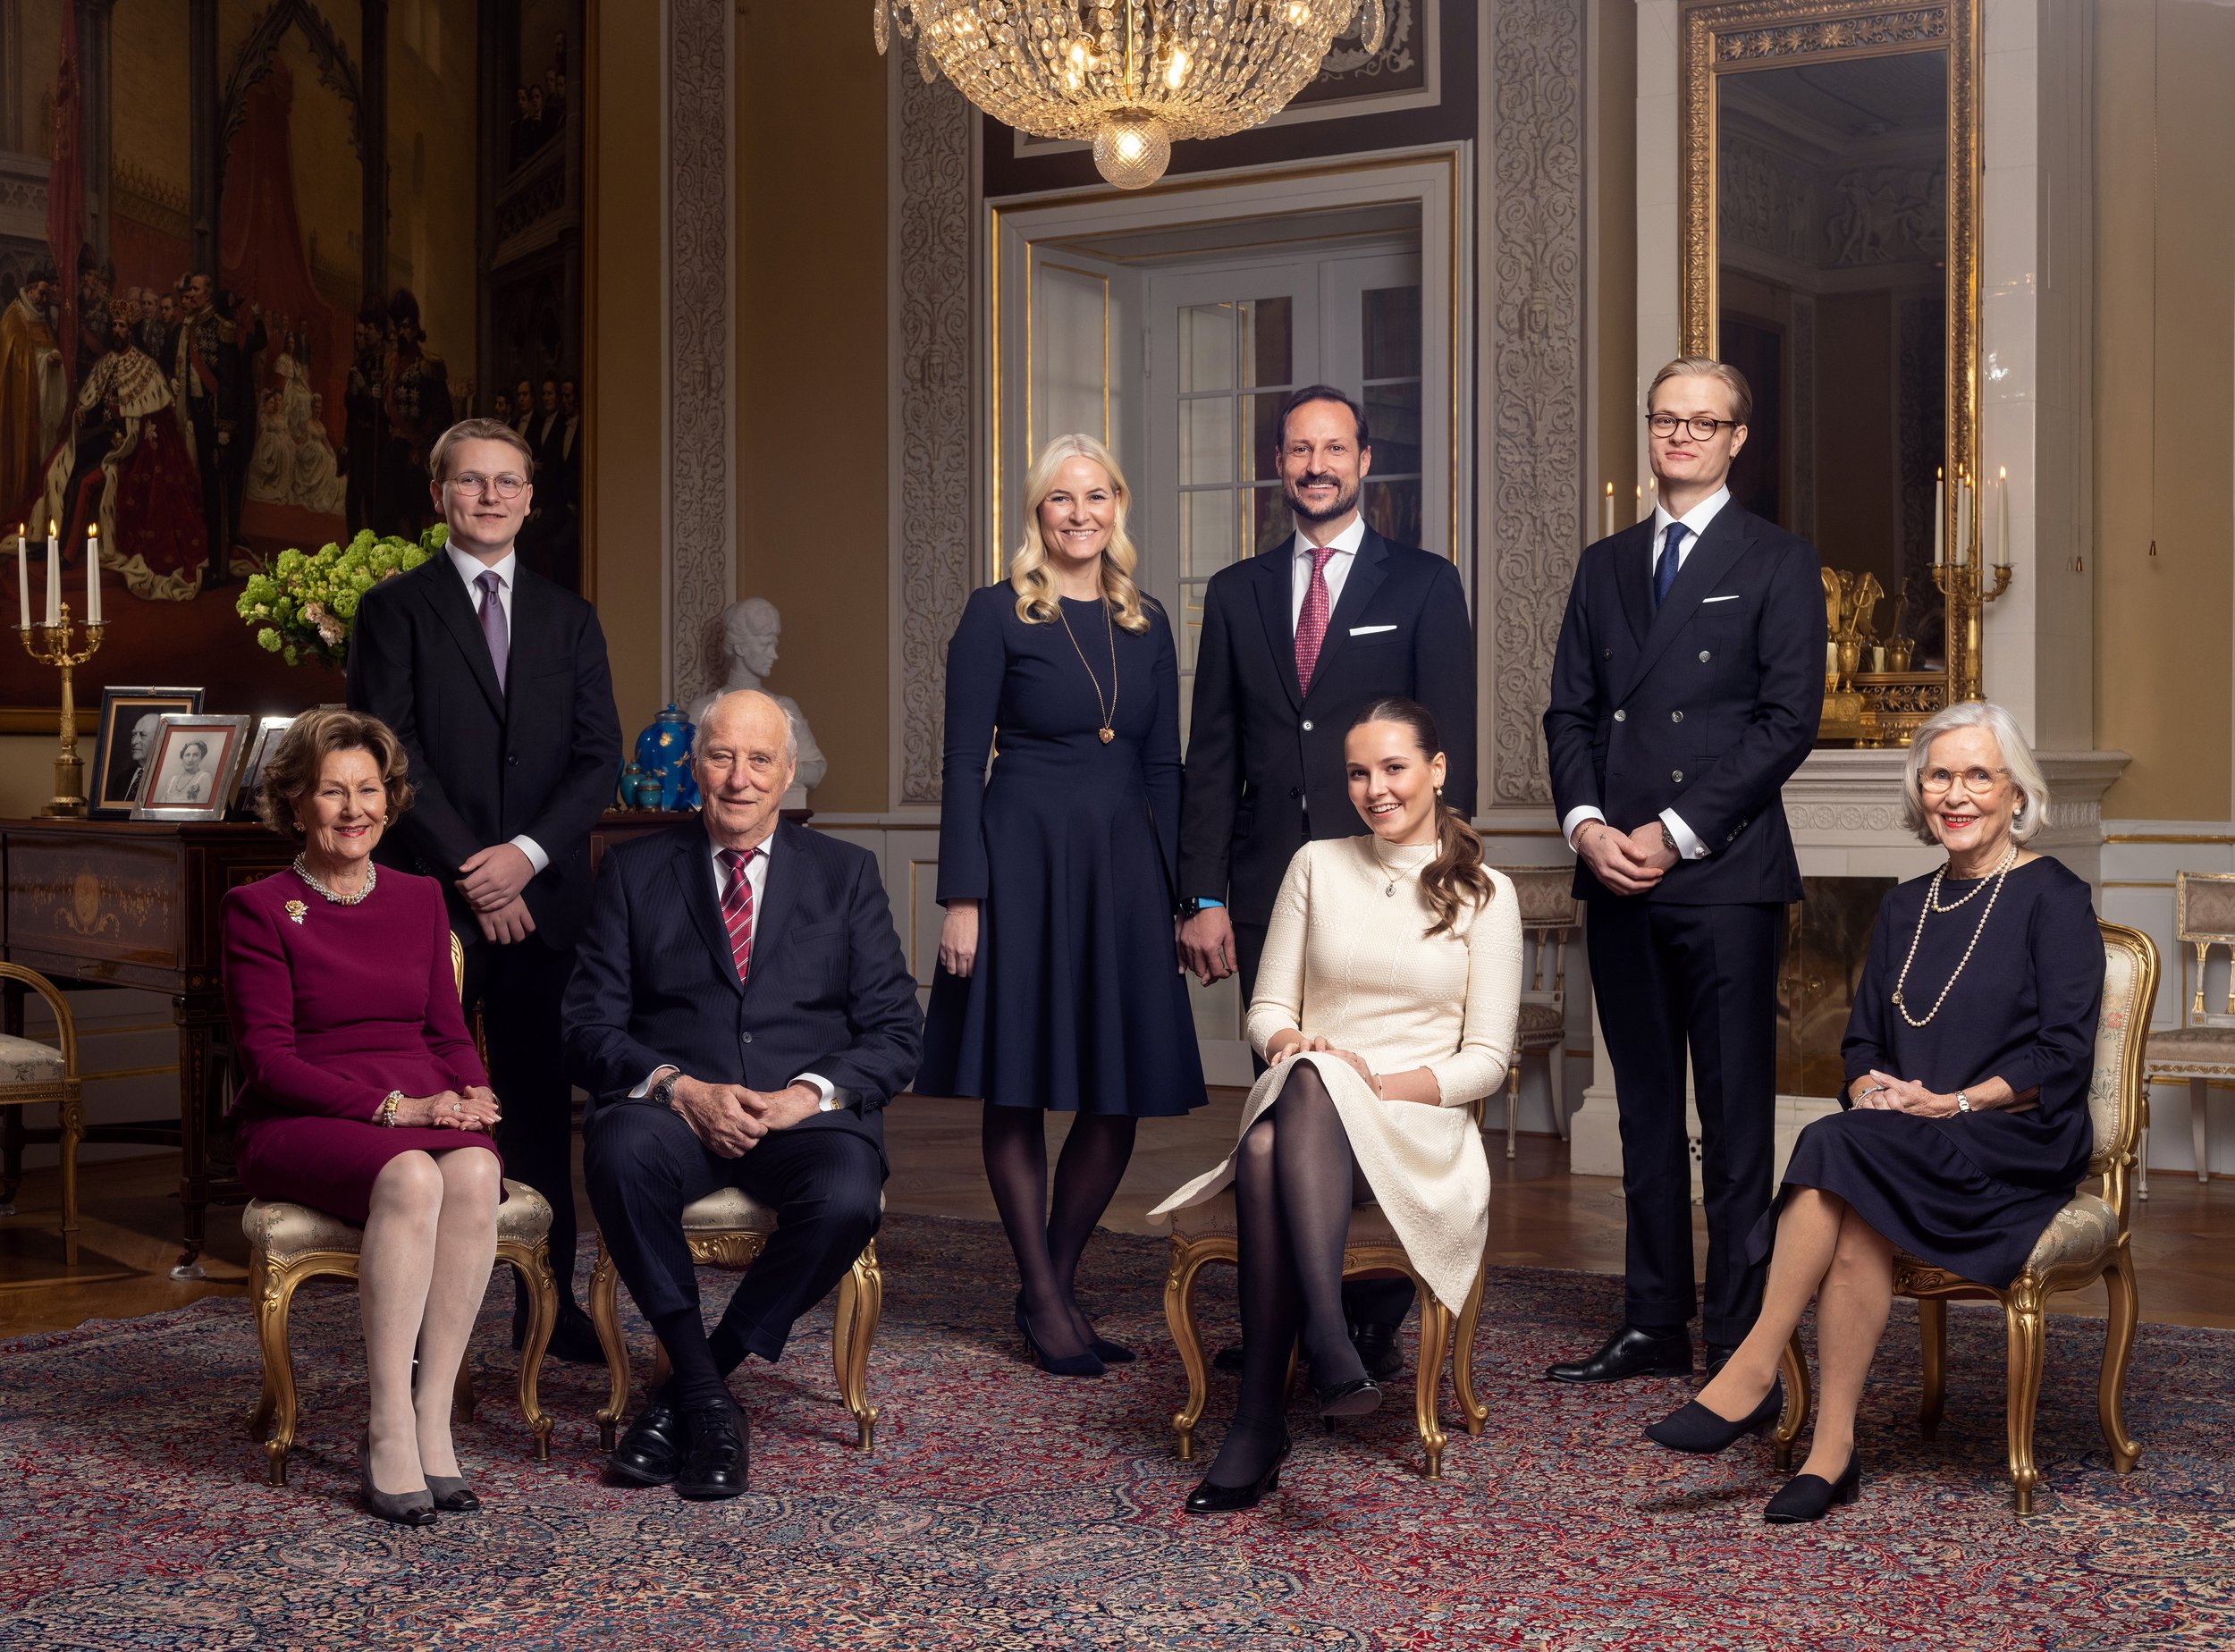 Foto: Kimm Saatvedt, Det kongelige hoff